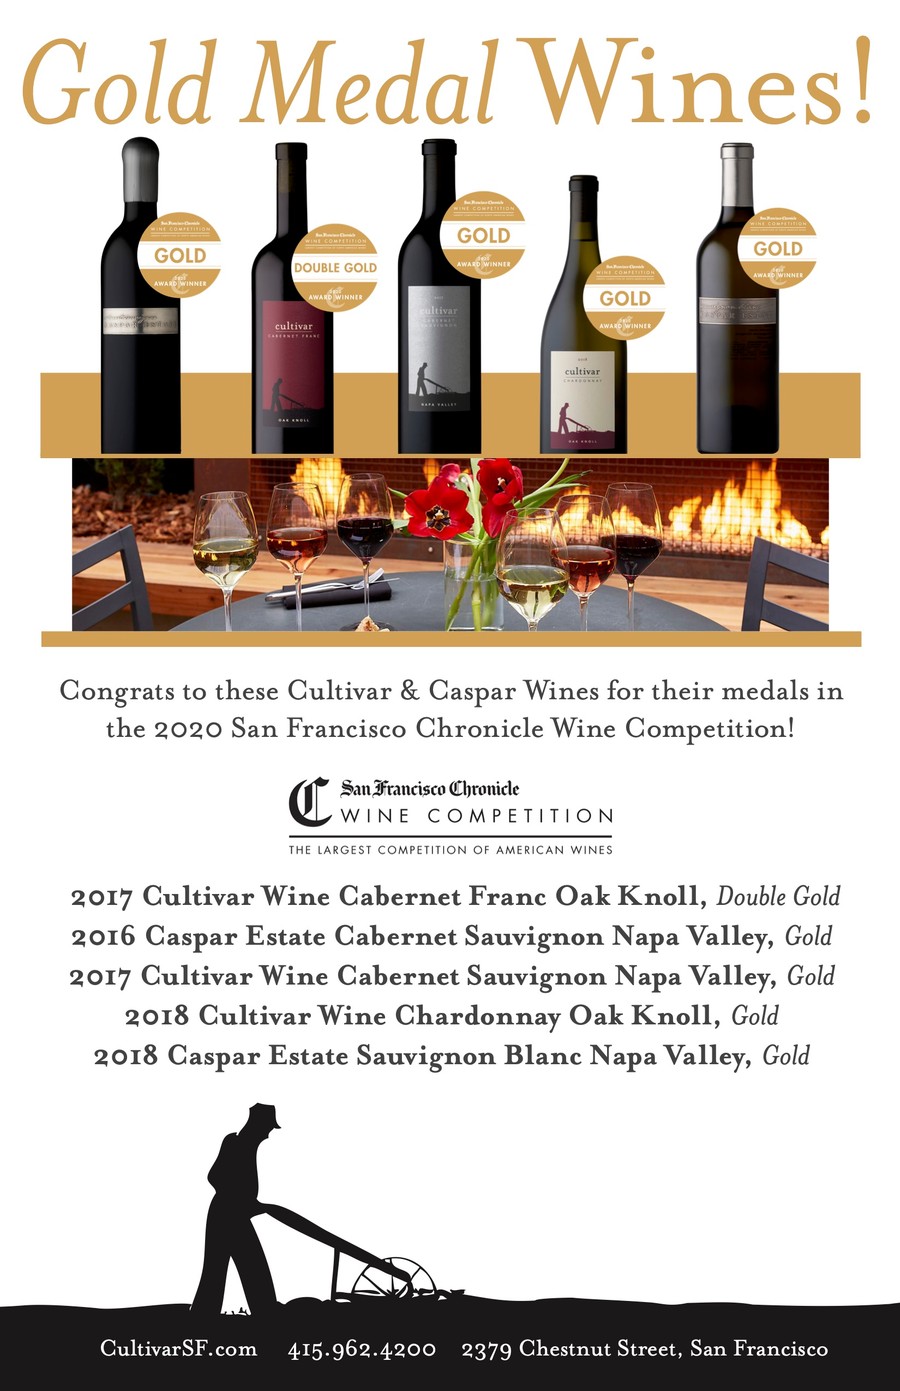 Gold Medal Cultivar & Caspar Wines